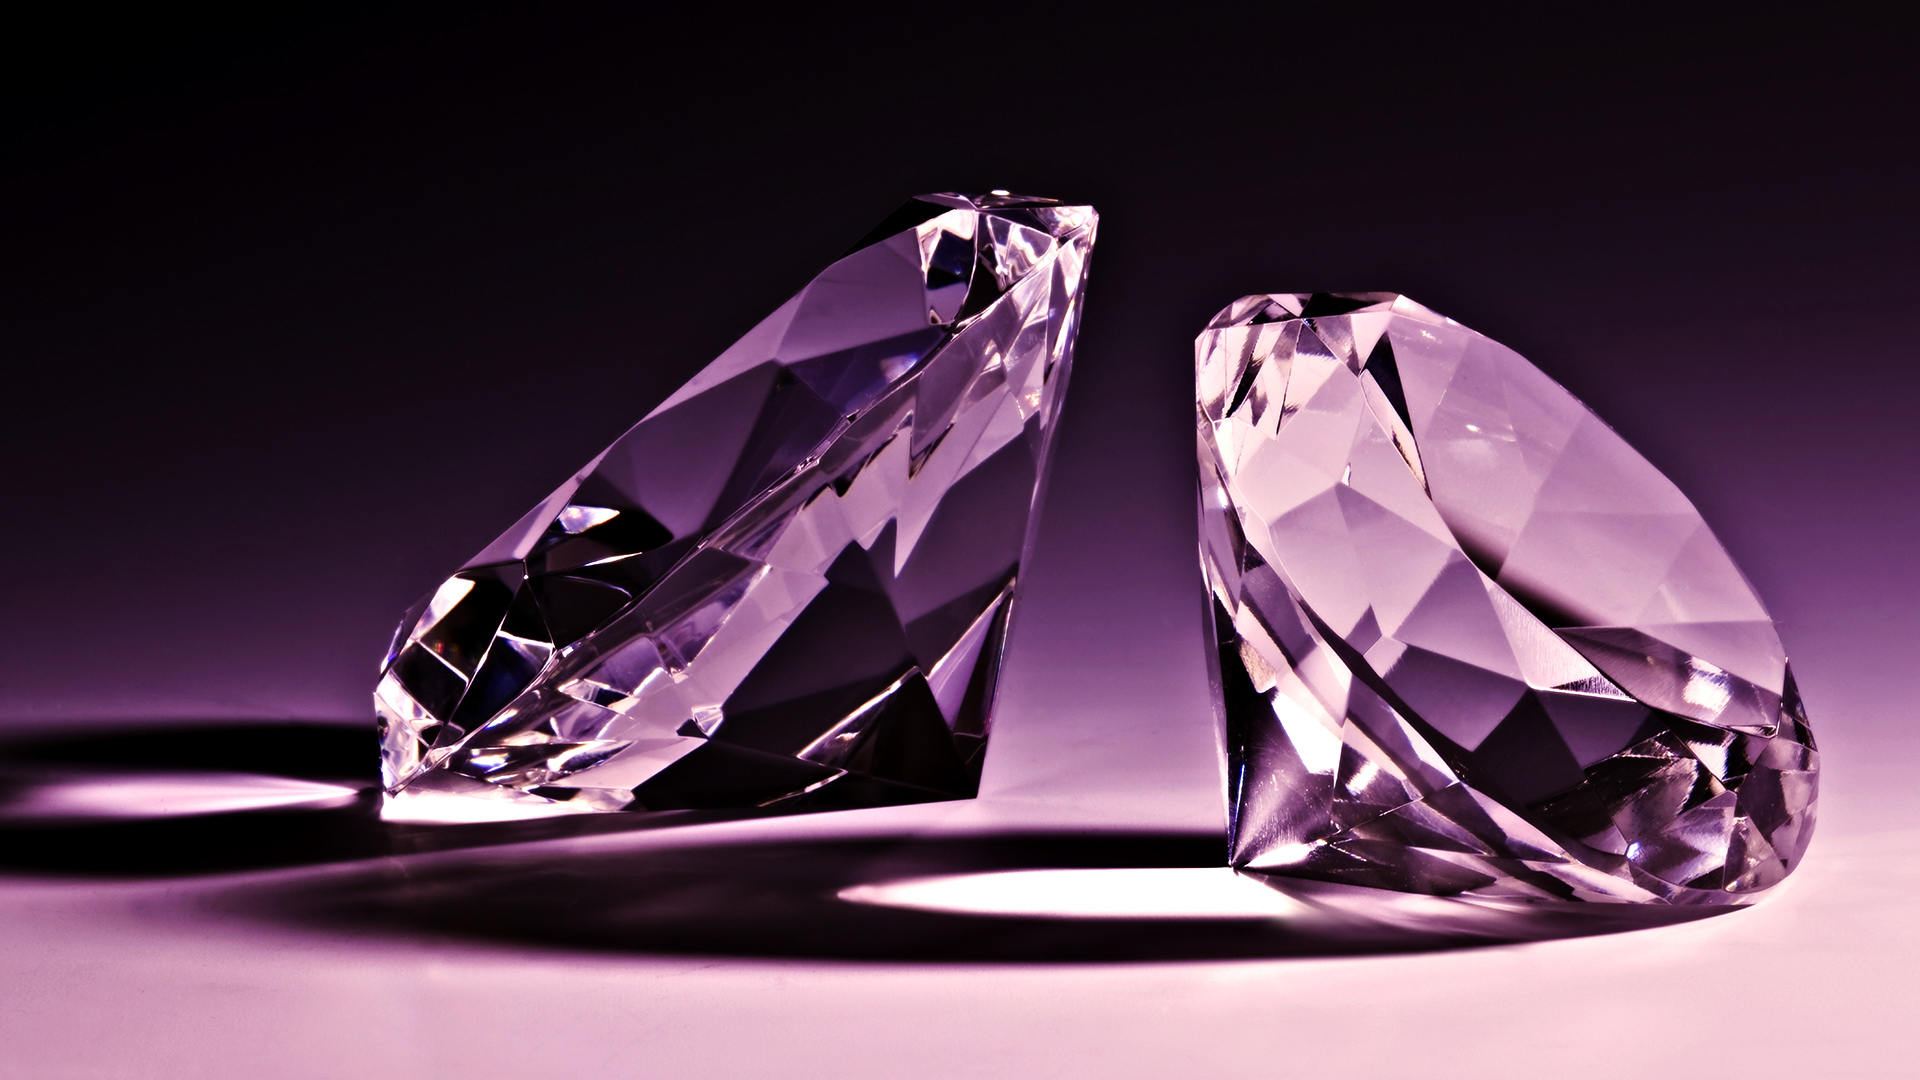 Two Glamorous Diamond Wallpaper 3d For Desktop